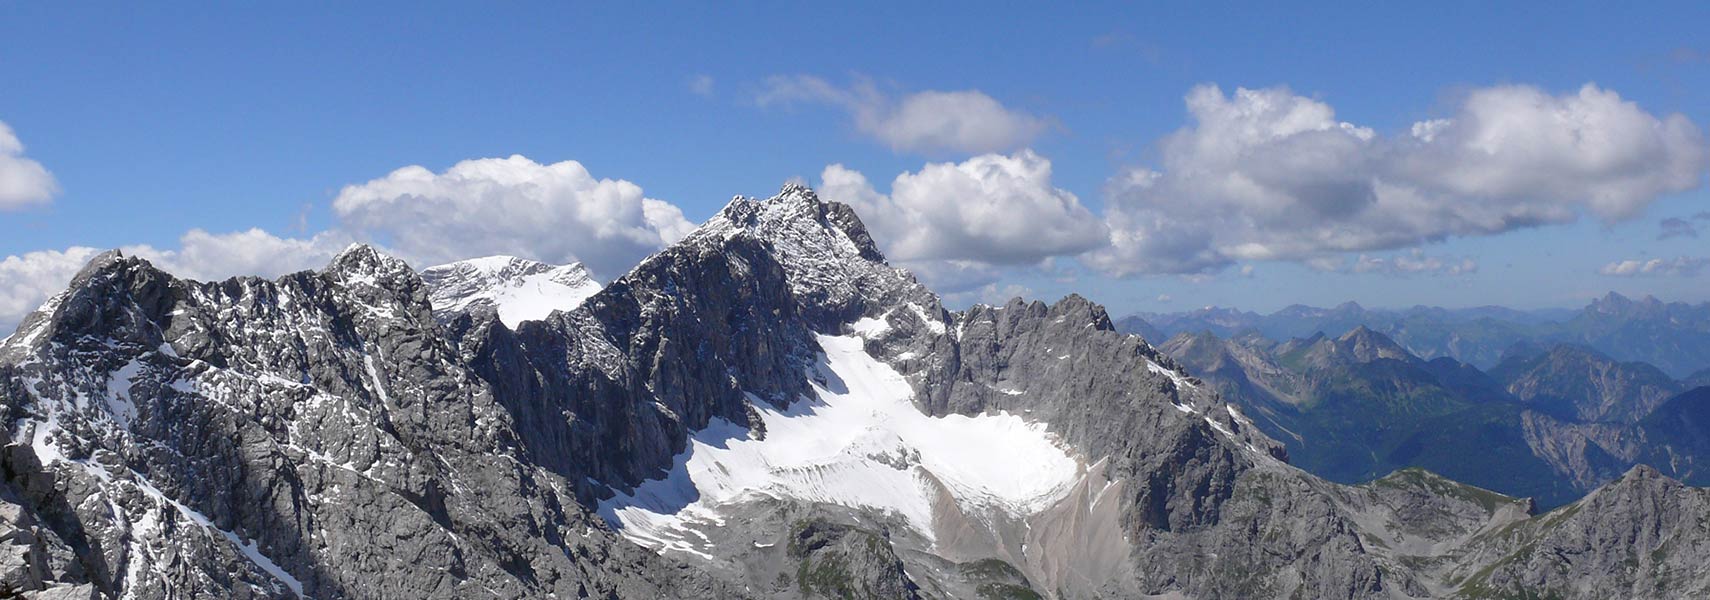 Zugspitze summit and Höllentalferner glacier, highest mountain in Germany